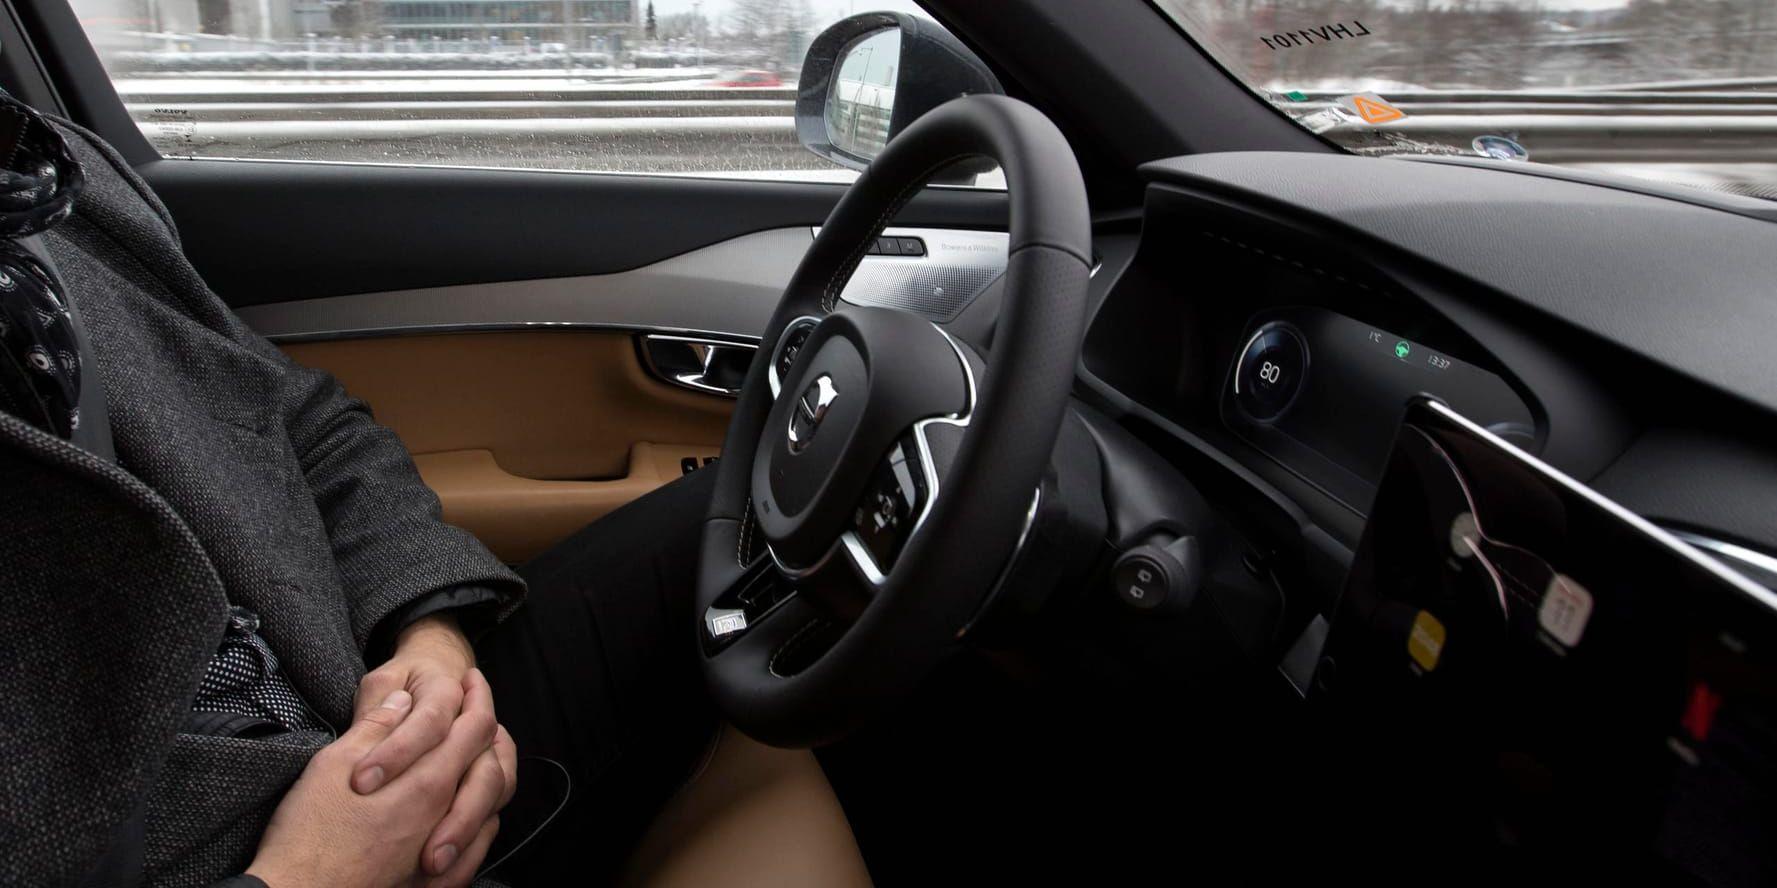 Bilar som kör själva känns osäkra, tycker 52 procent av de svarande i en undersökning. Arkivbild.